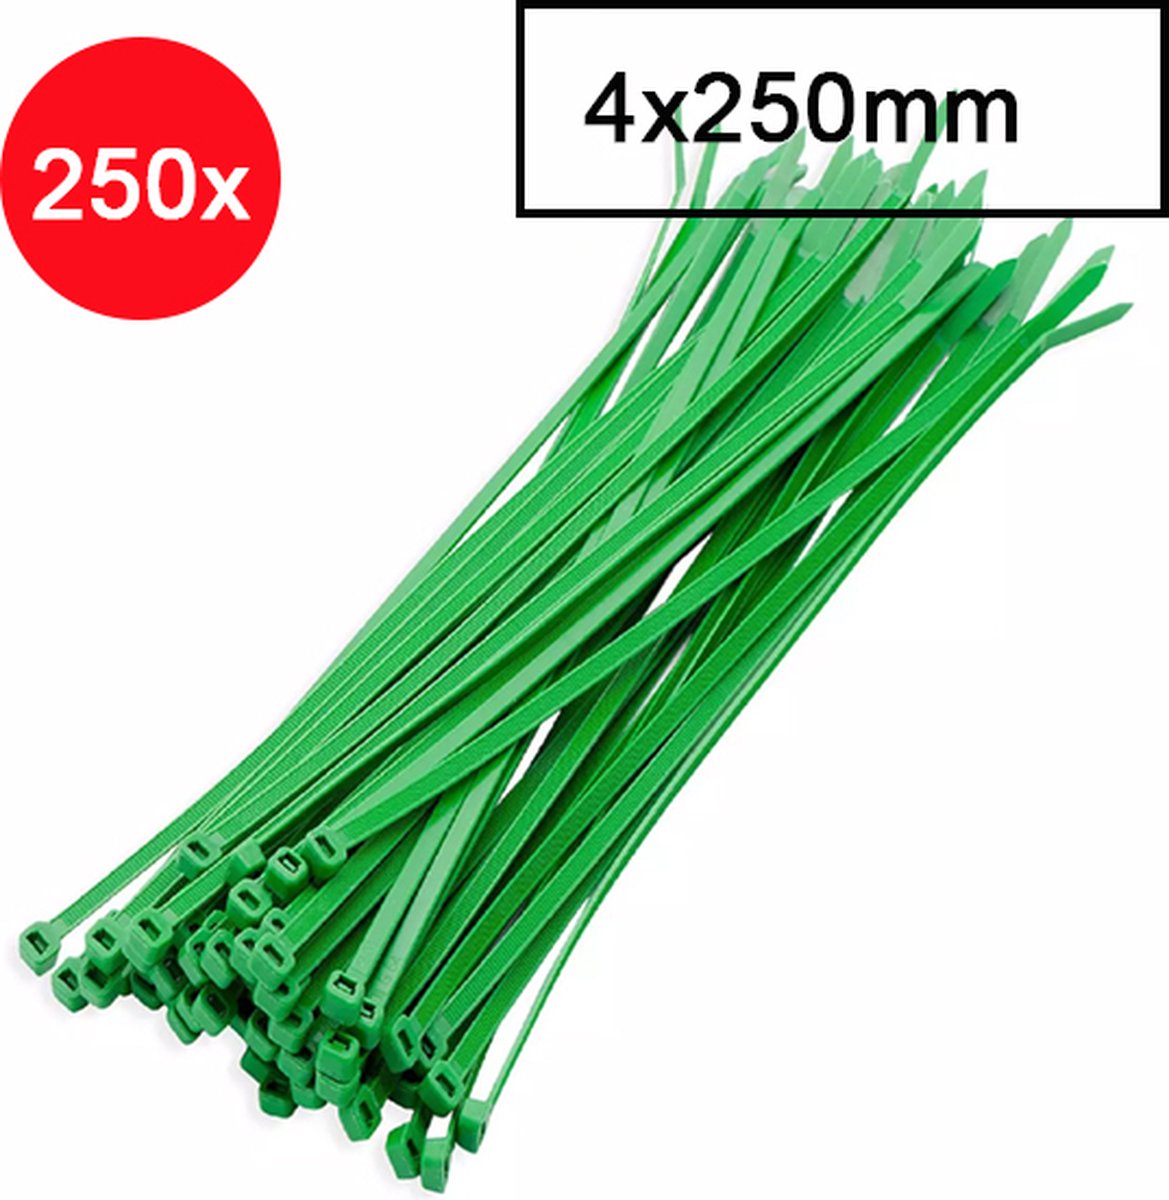 Kabelbinders - Tyraps - Tie wraps - Kabel organizer - 4x250mm - 250 stuks - groen